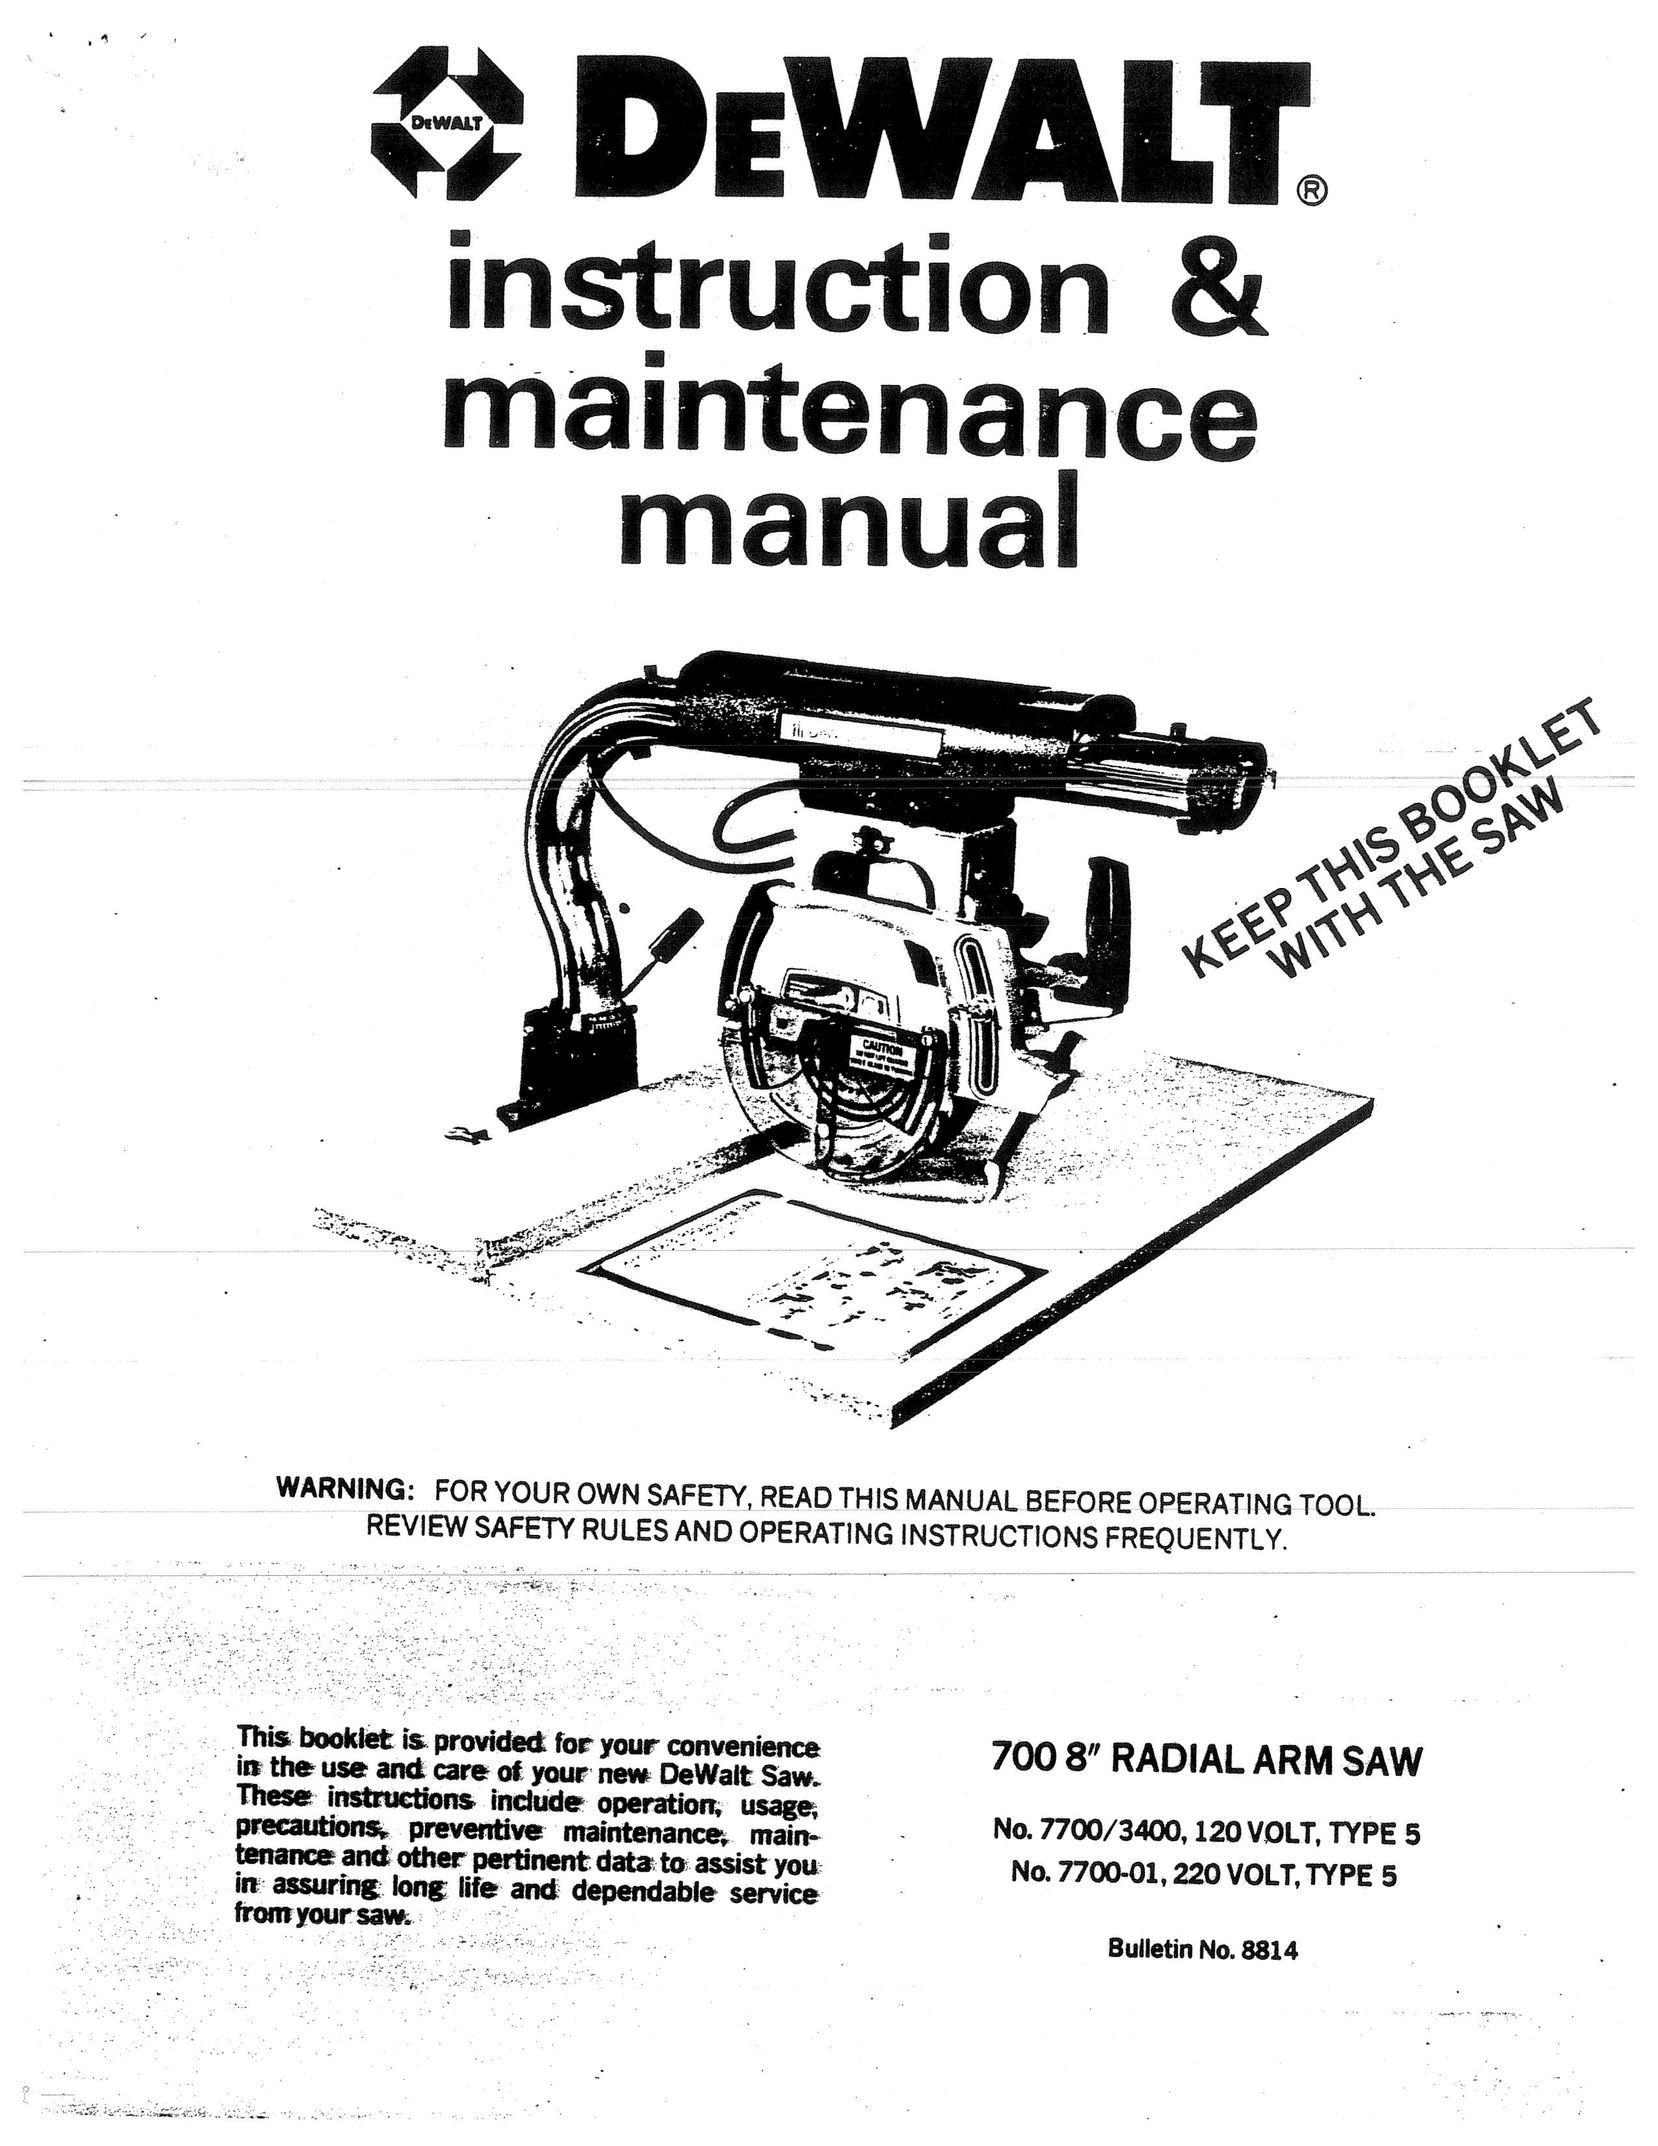 DeWalt 7700-01 Saw User Manual